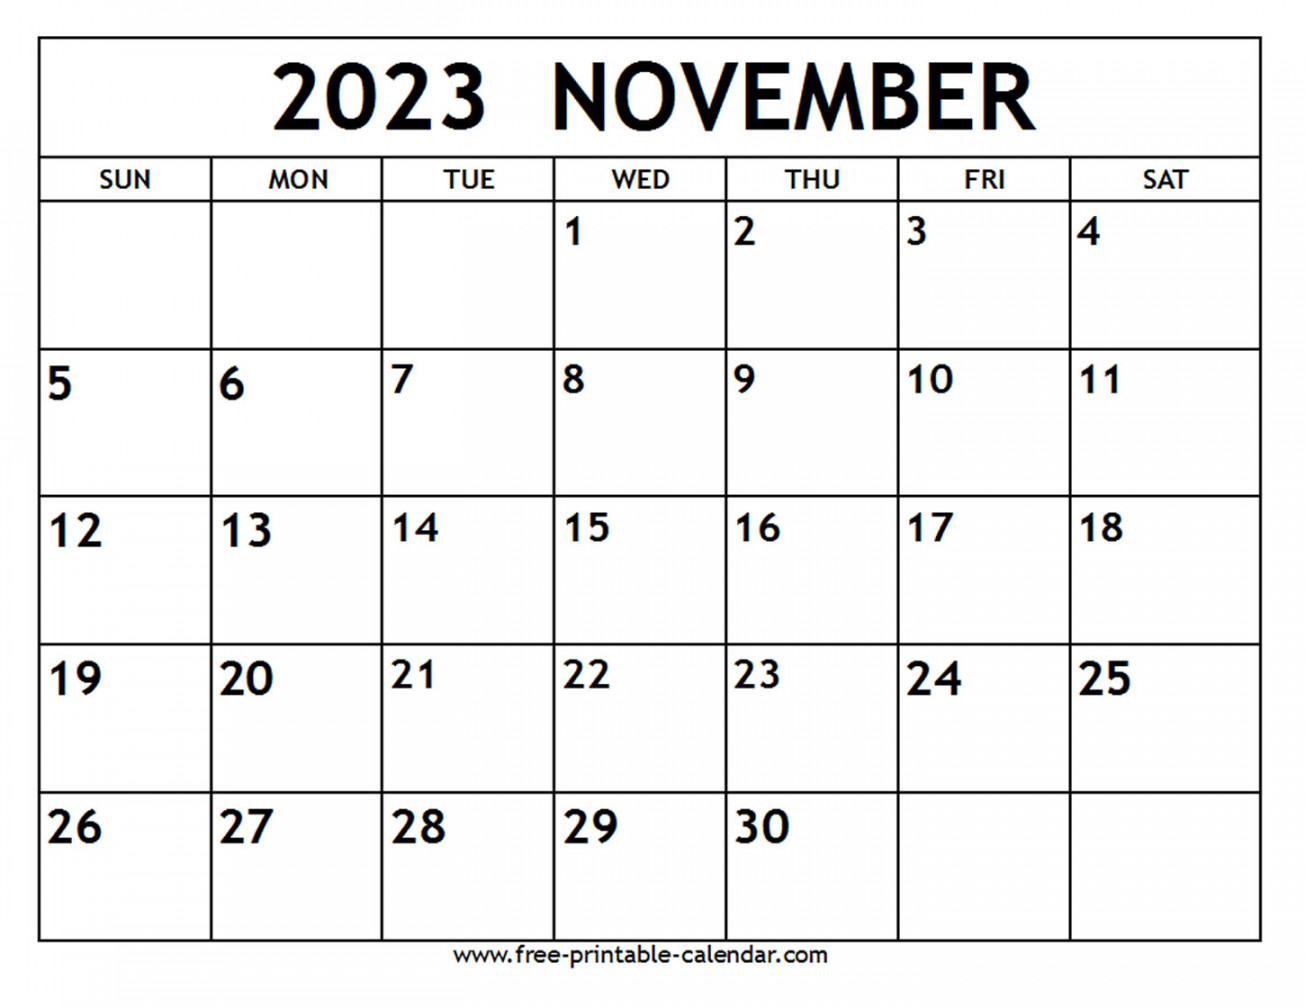 november calendar free printable calendar com 1